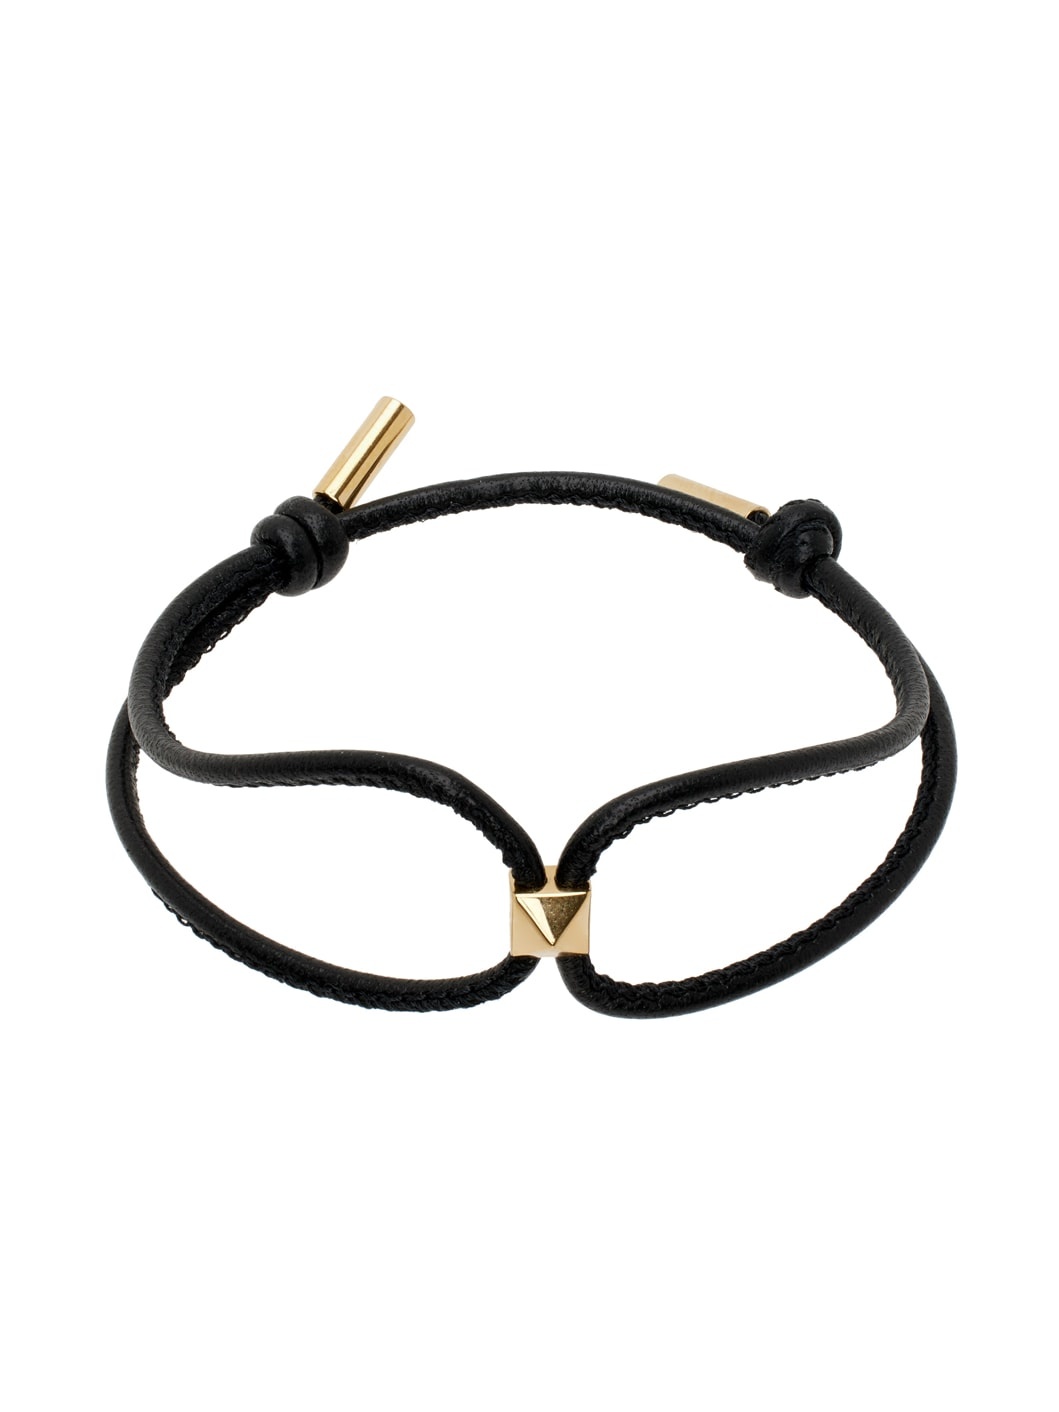 Black & Gold Rockstud Leather Bracelet - 1